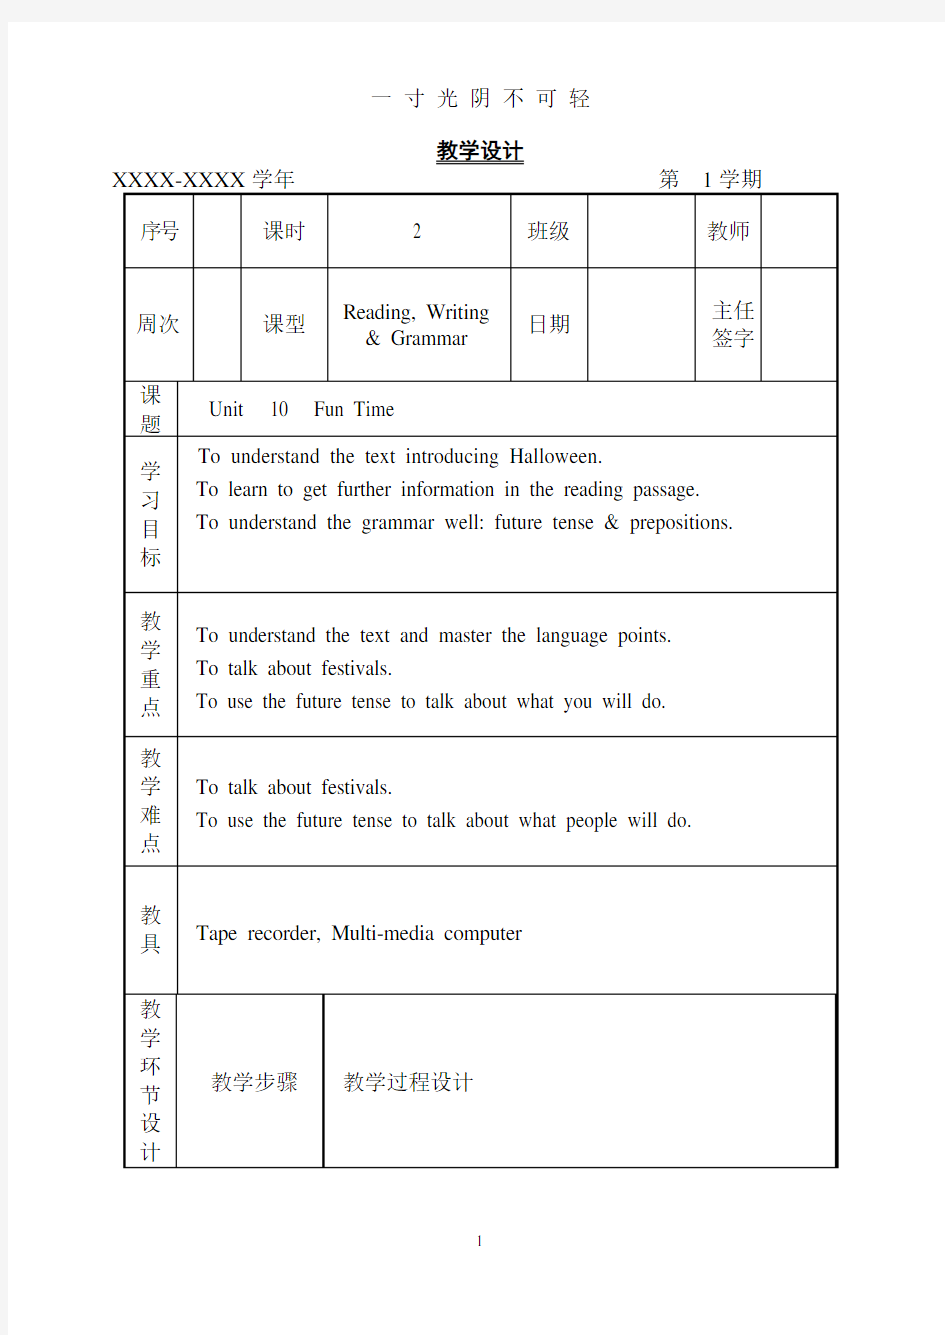 中职英语基础模块第一册电子教案.pdf